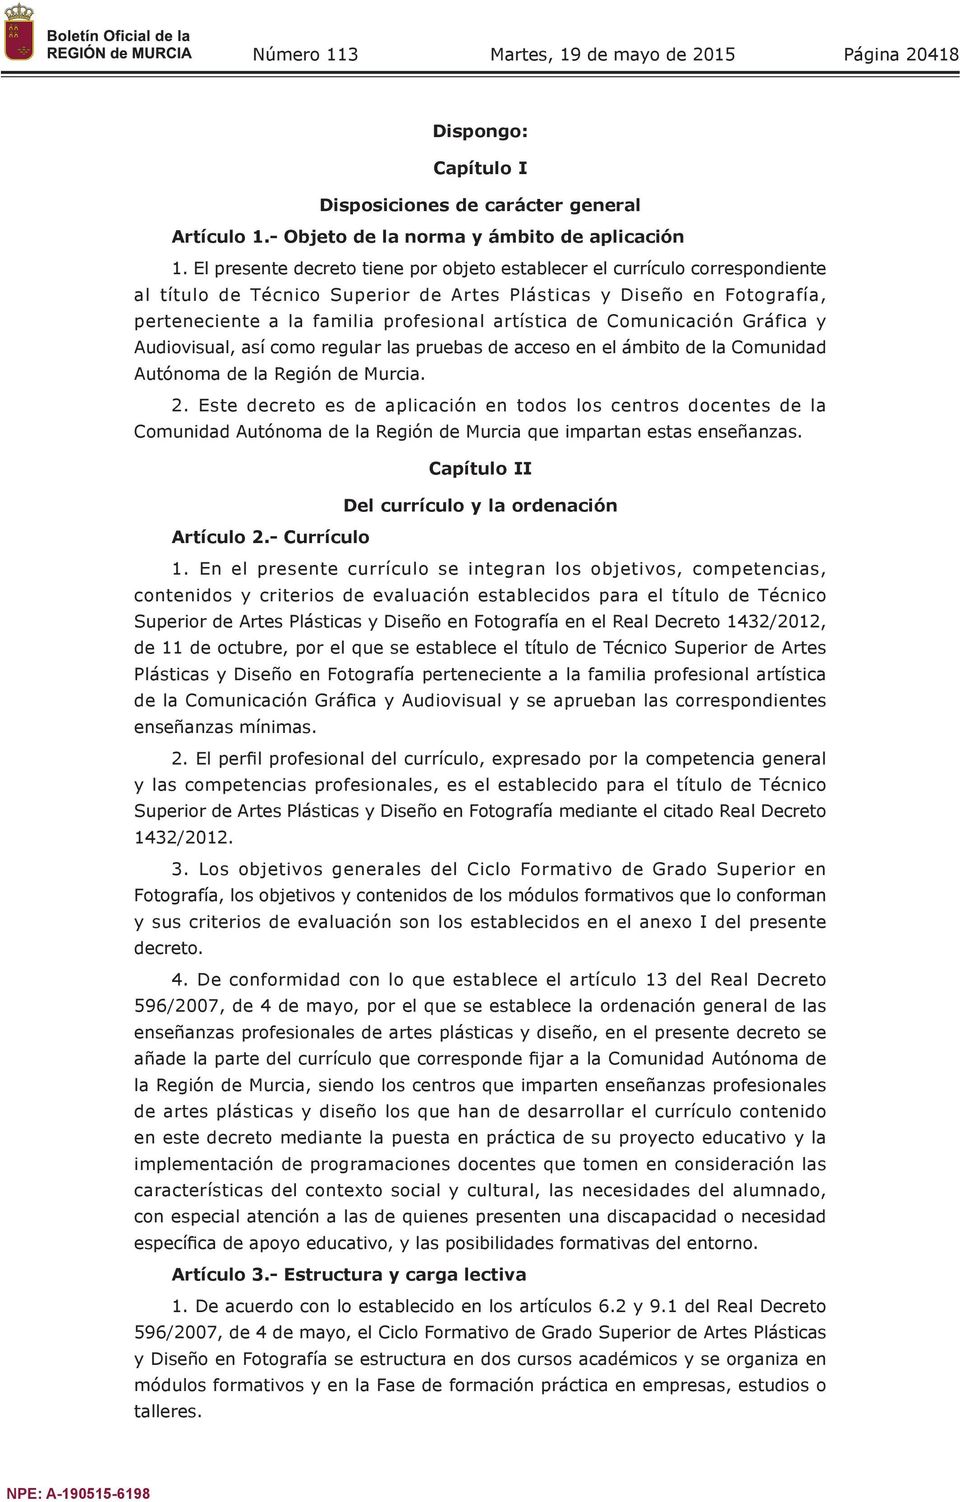 de Comunicación Gráfica y Audiovisual, así como regular las pruebas de acceso en el ámbito de la Comunidad Autónoma de la Región de Murcia. 2.